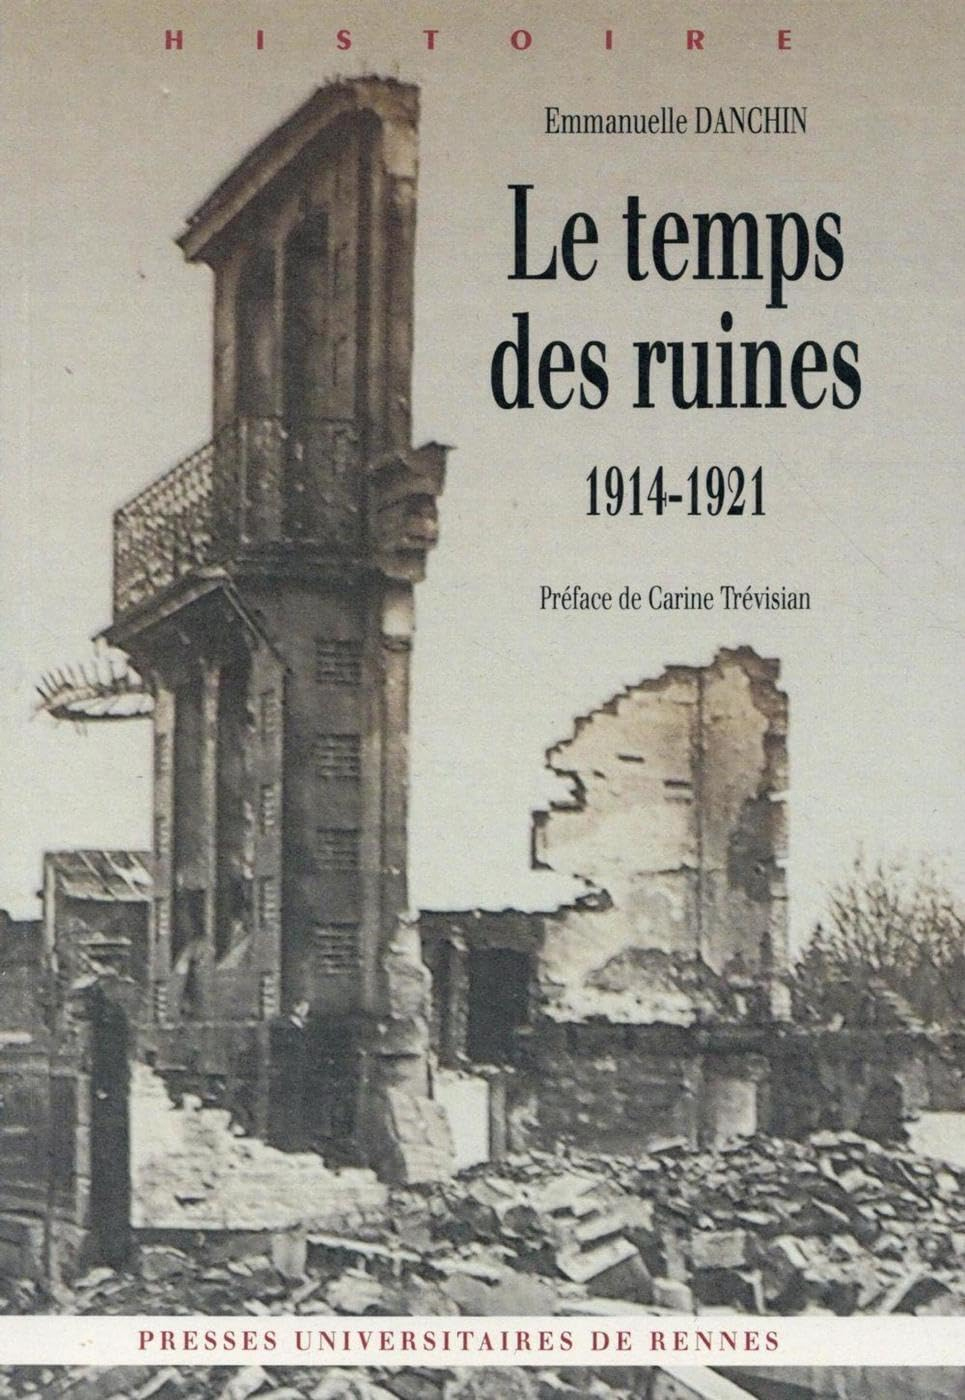 Le temps des ruines : 1914-1921